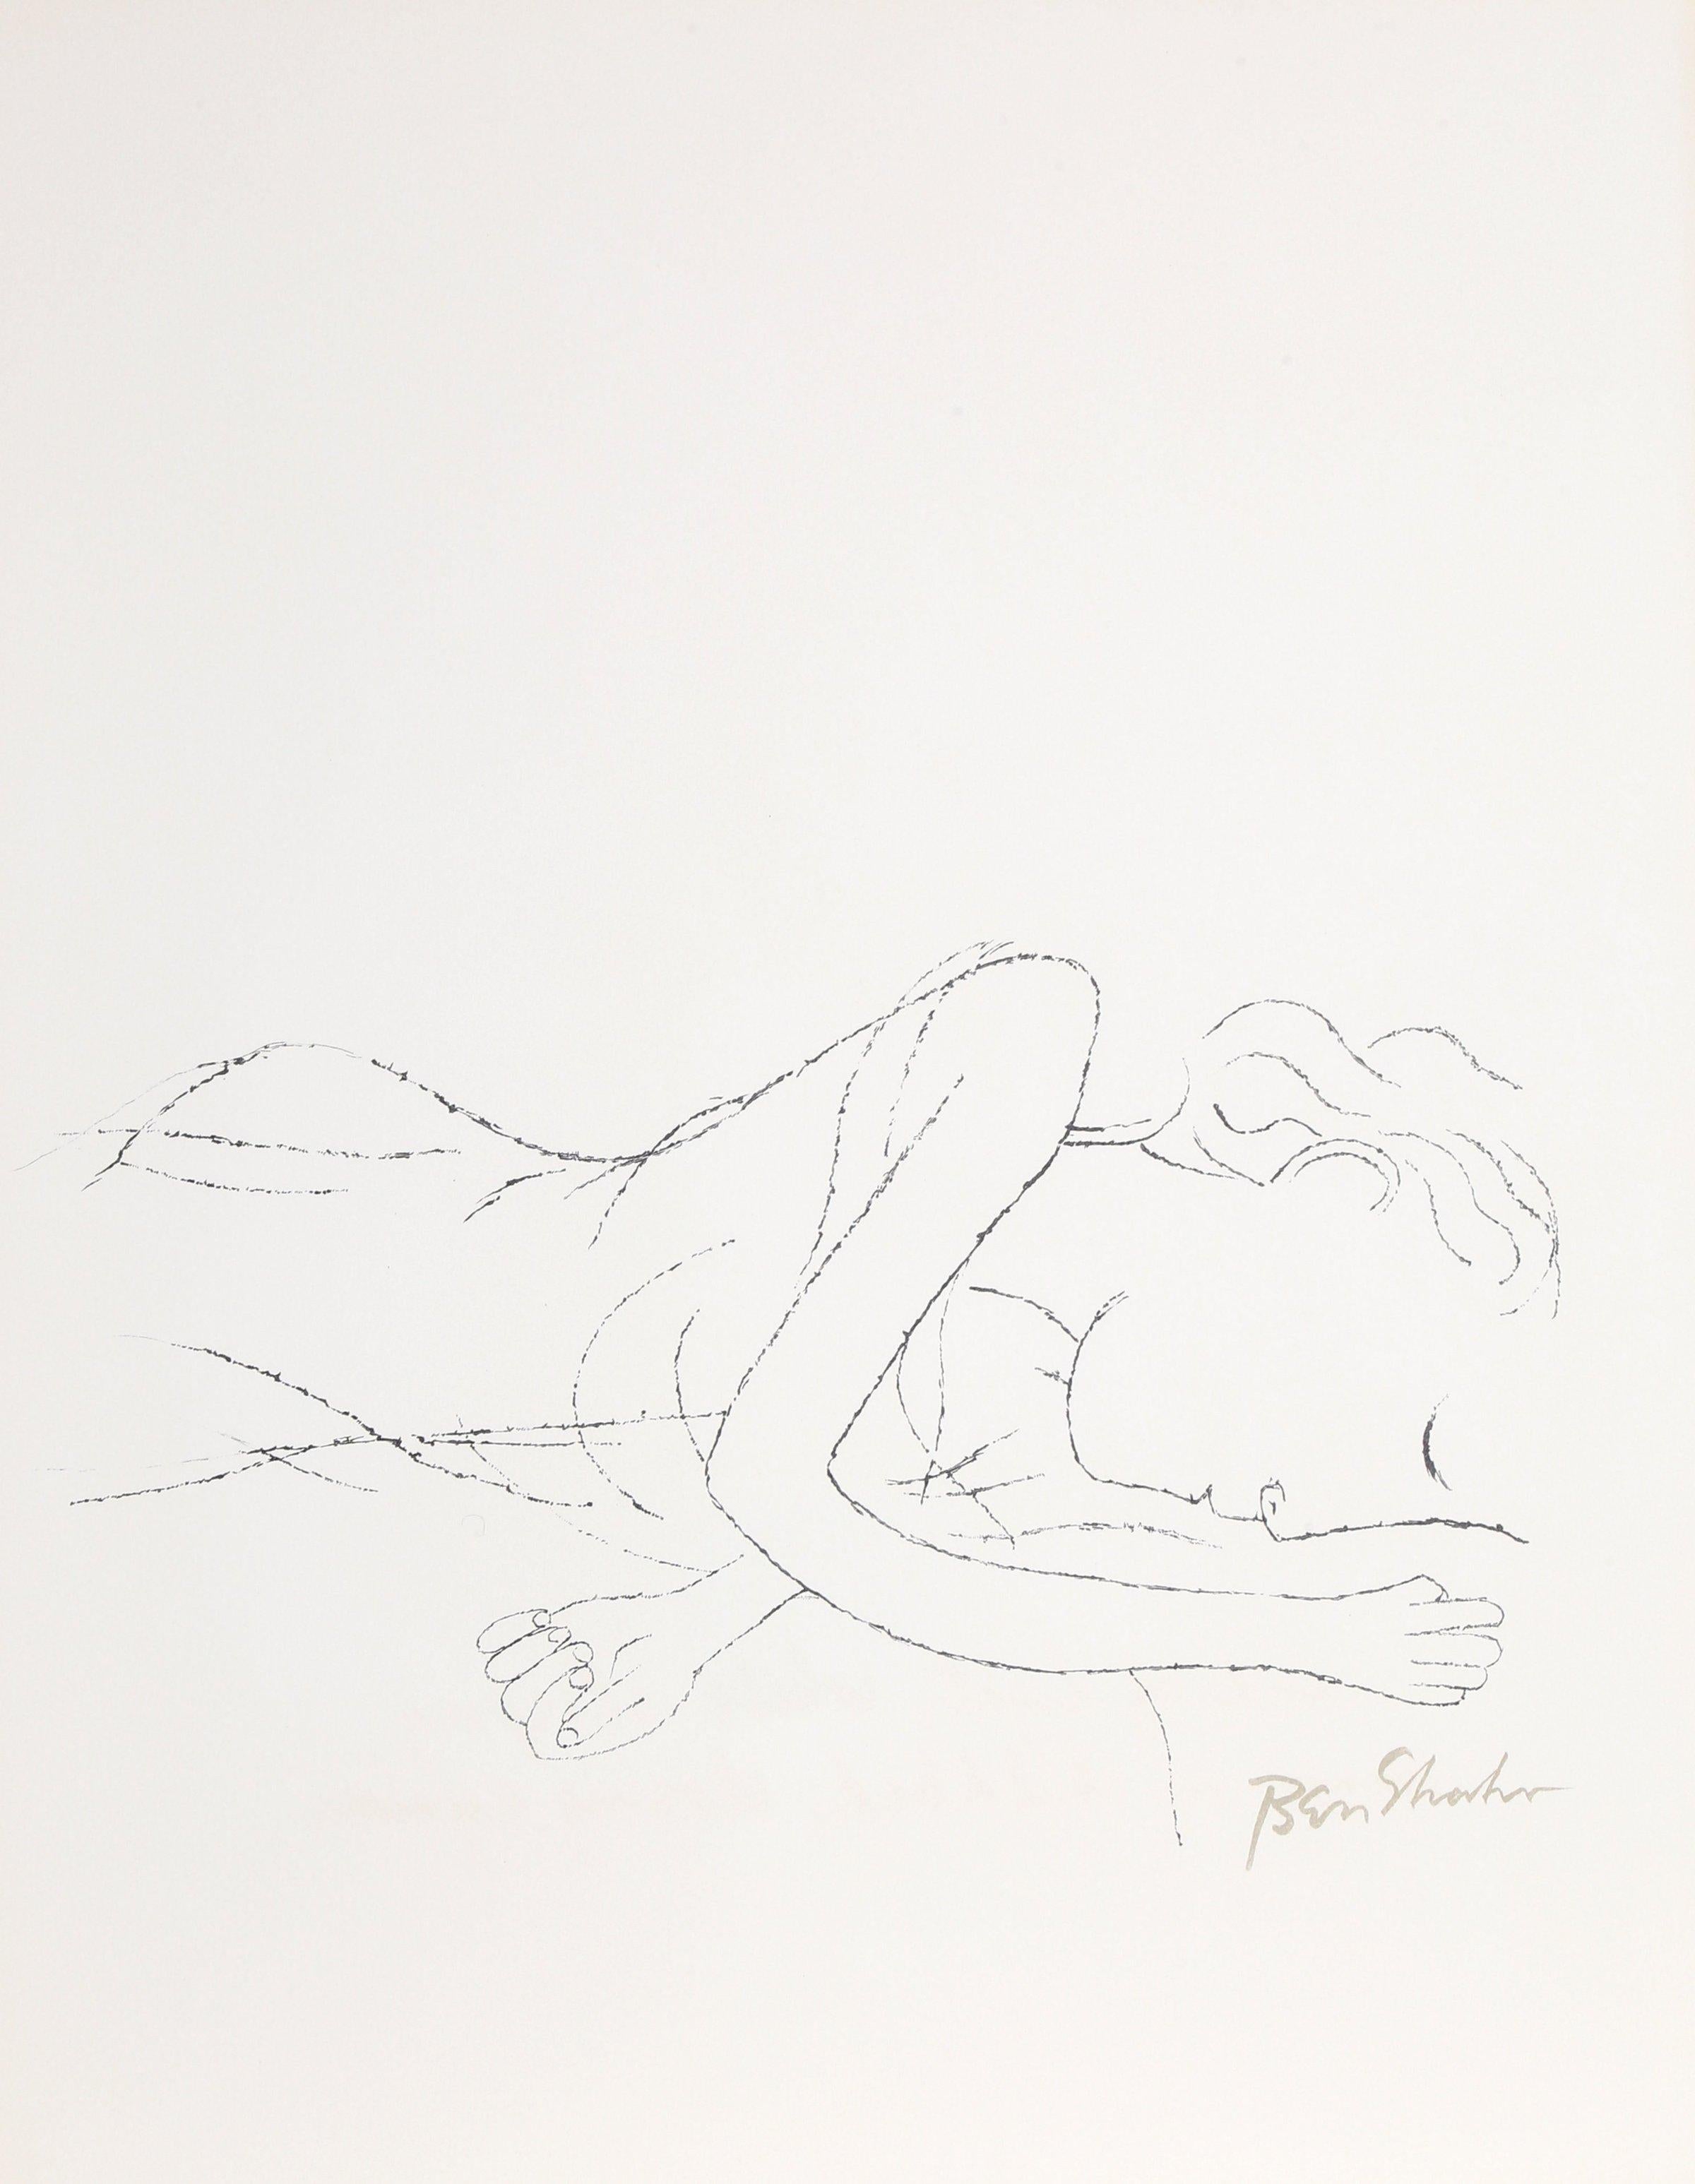 Ben Shahn Portrait Print - Of Light, White Sleeping Women in Childbed from the Rilke Portfolio